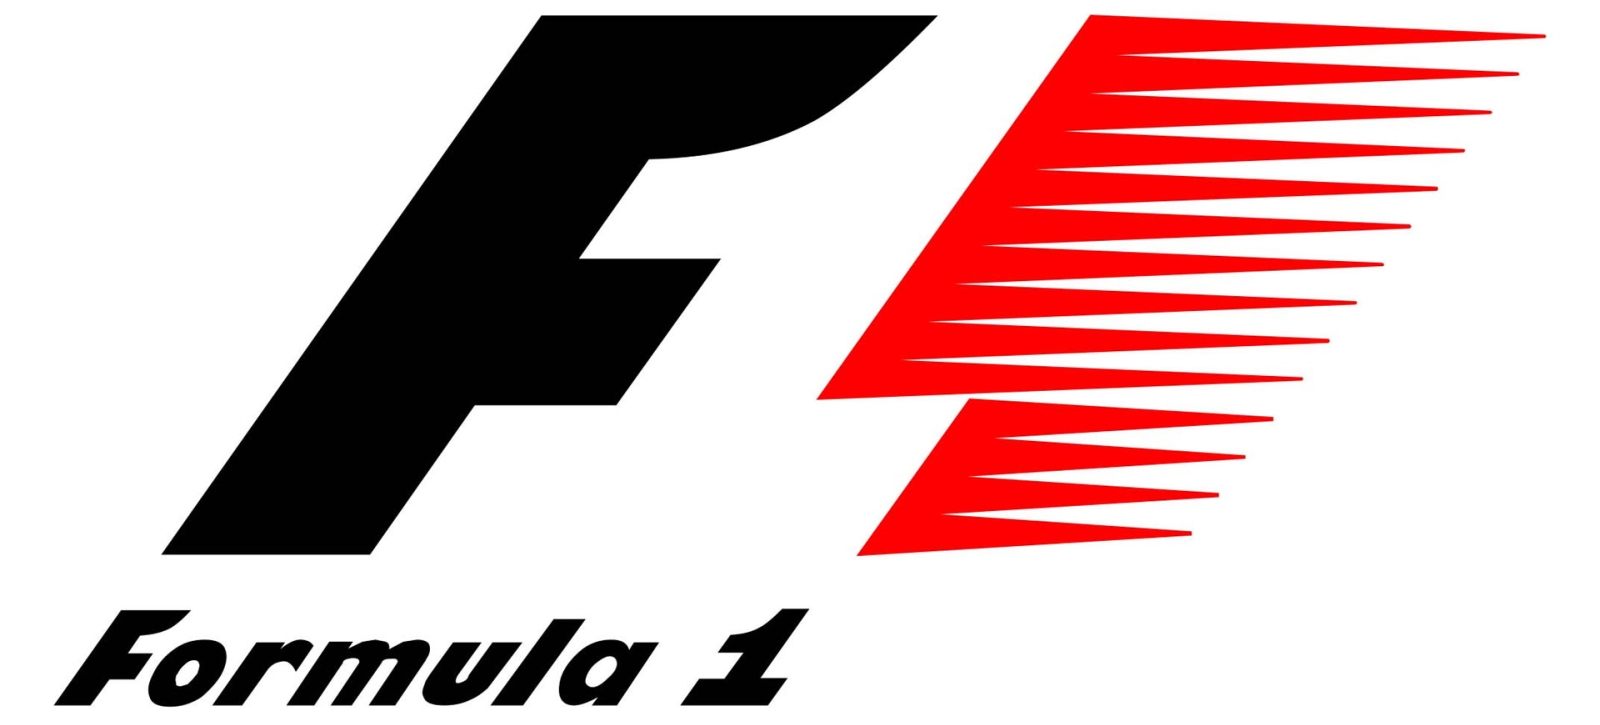 Formule 1-logo oud